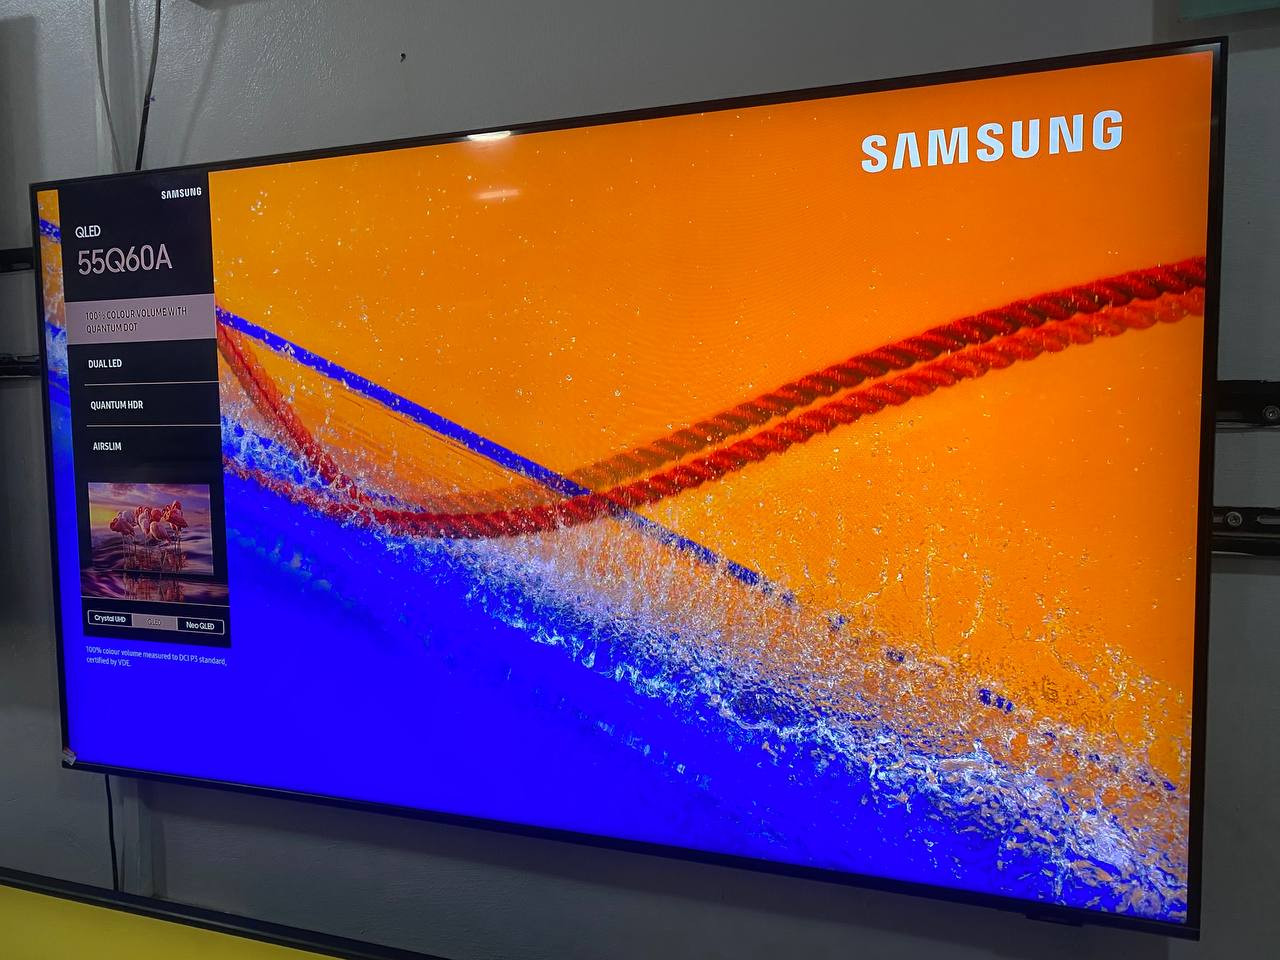 Samsung Smart Hub 55" QLED 4K HDR TV [2021]